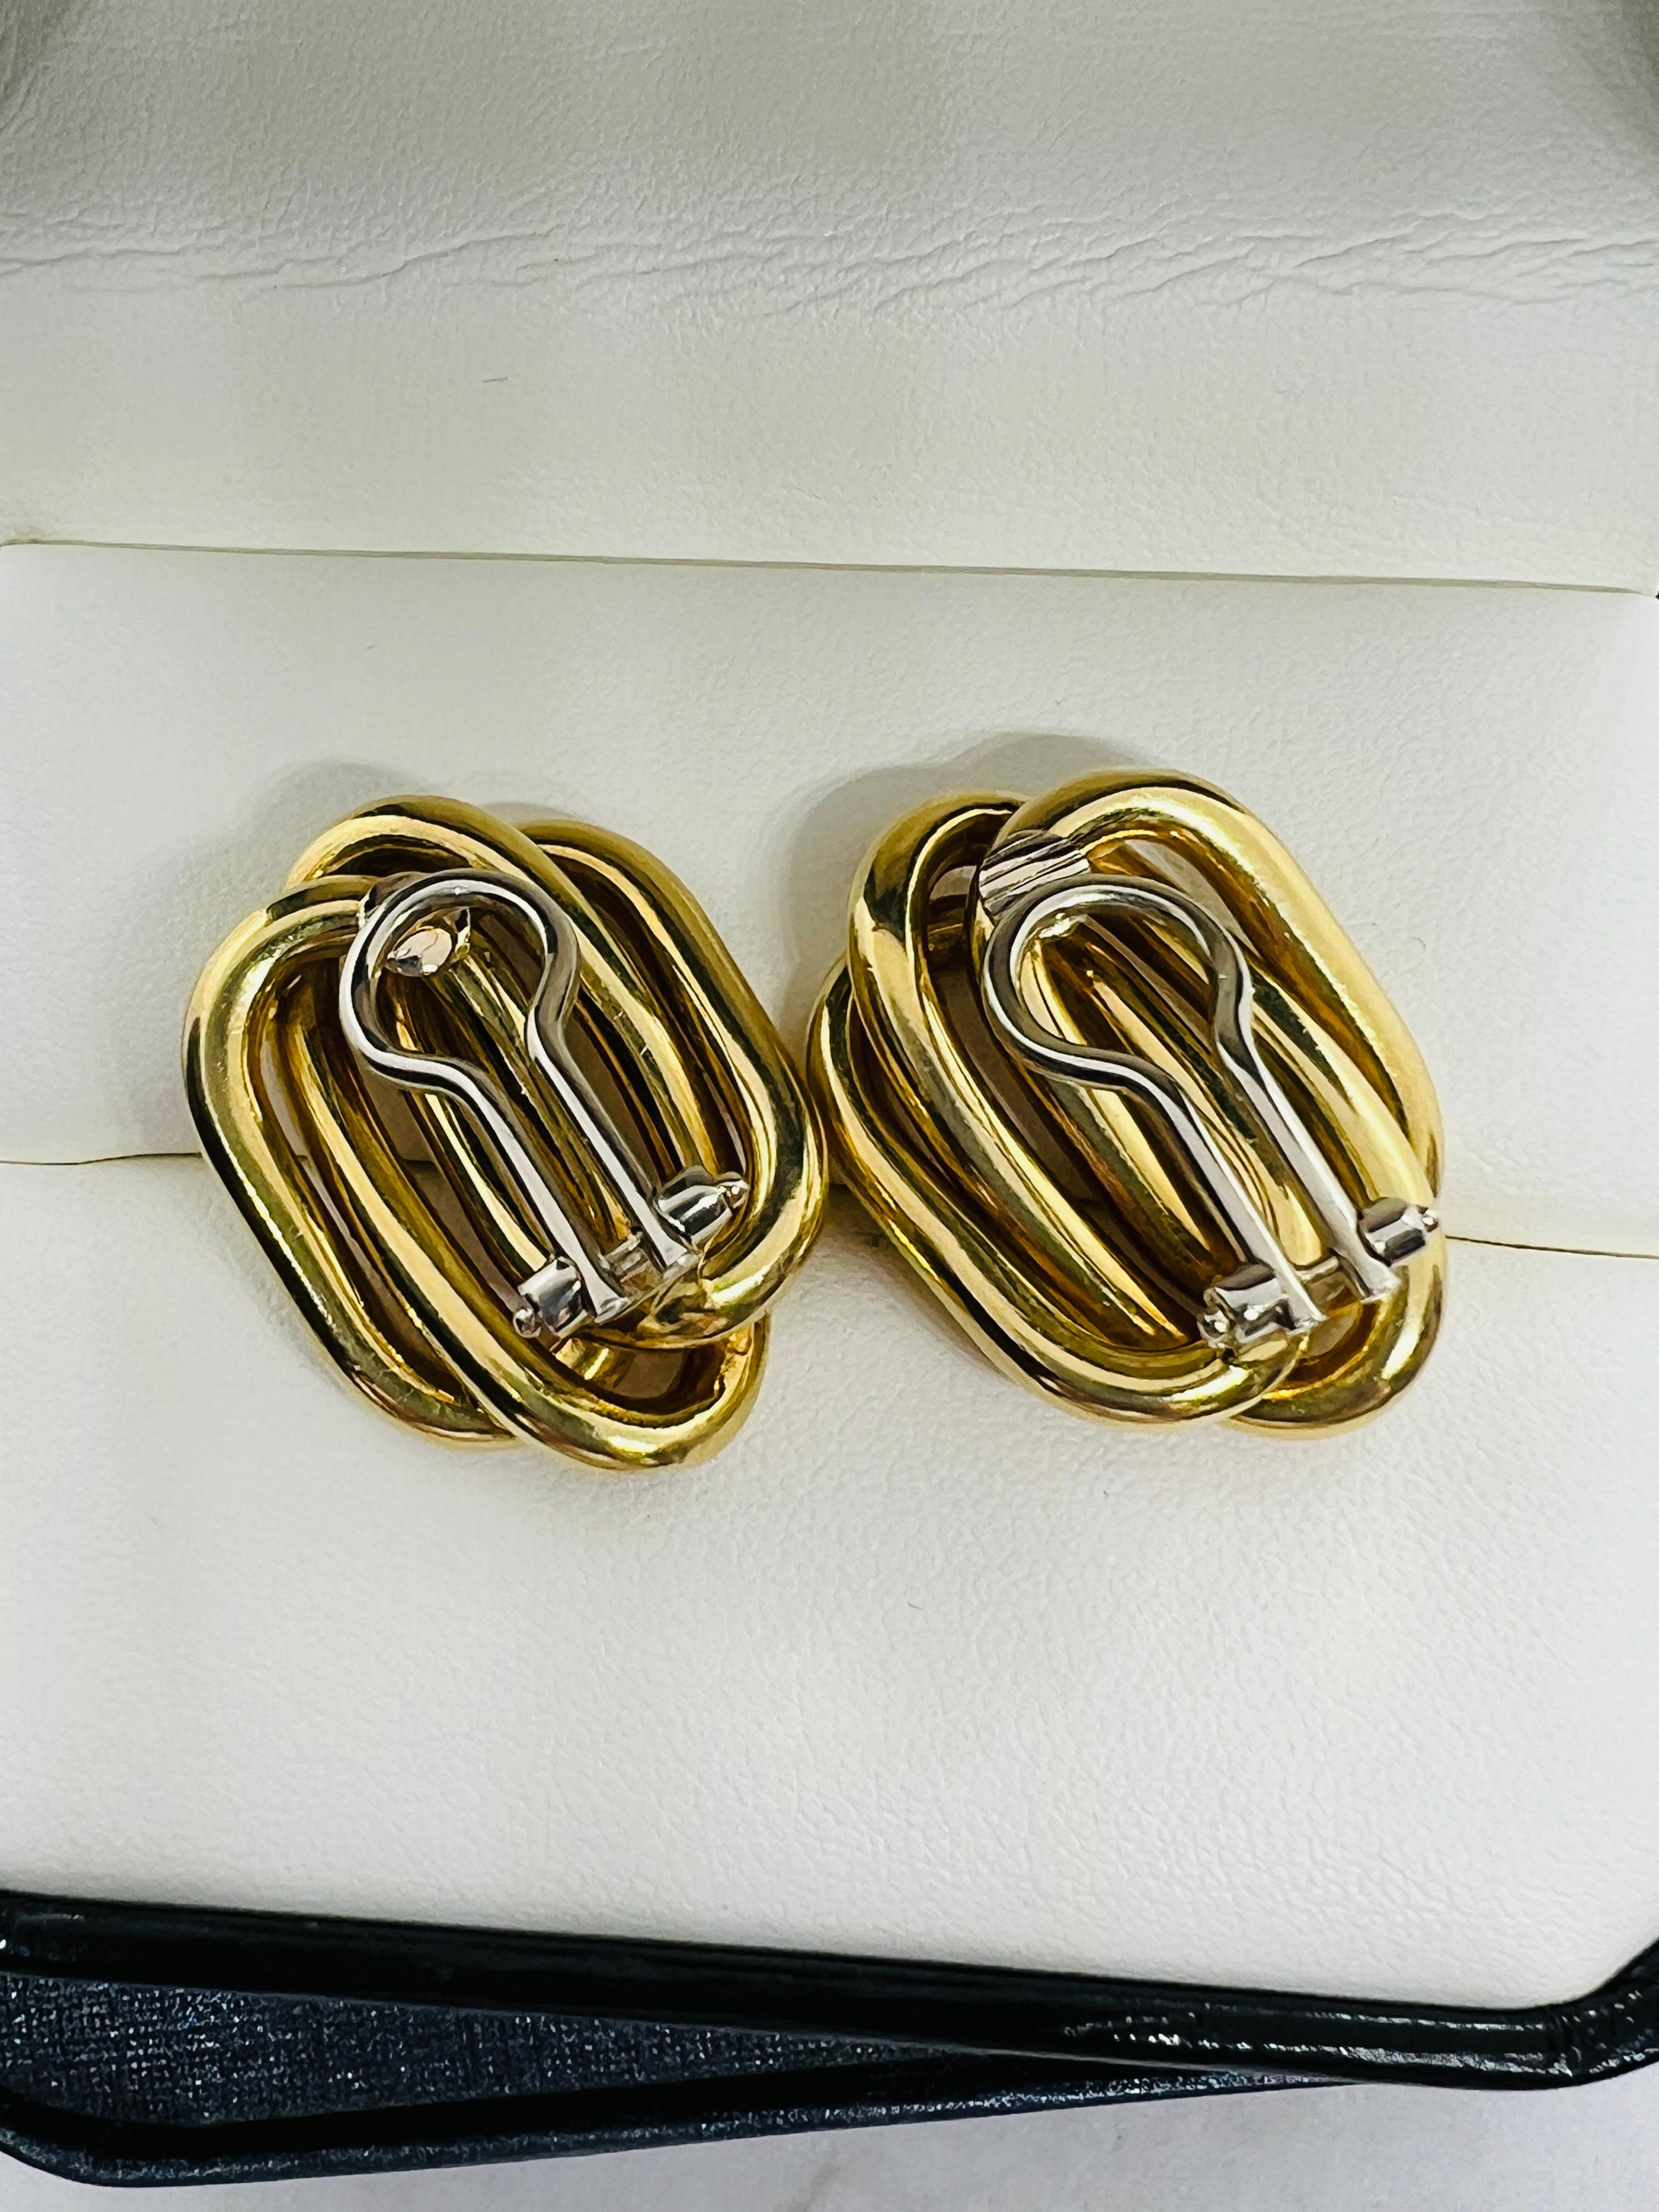 Designer Bvlgari 18K Yellow Gold Mid Century Modern Clip On Earrings 13.5 grams  2